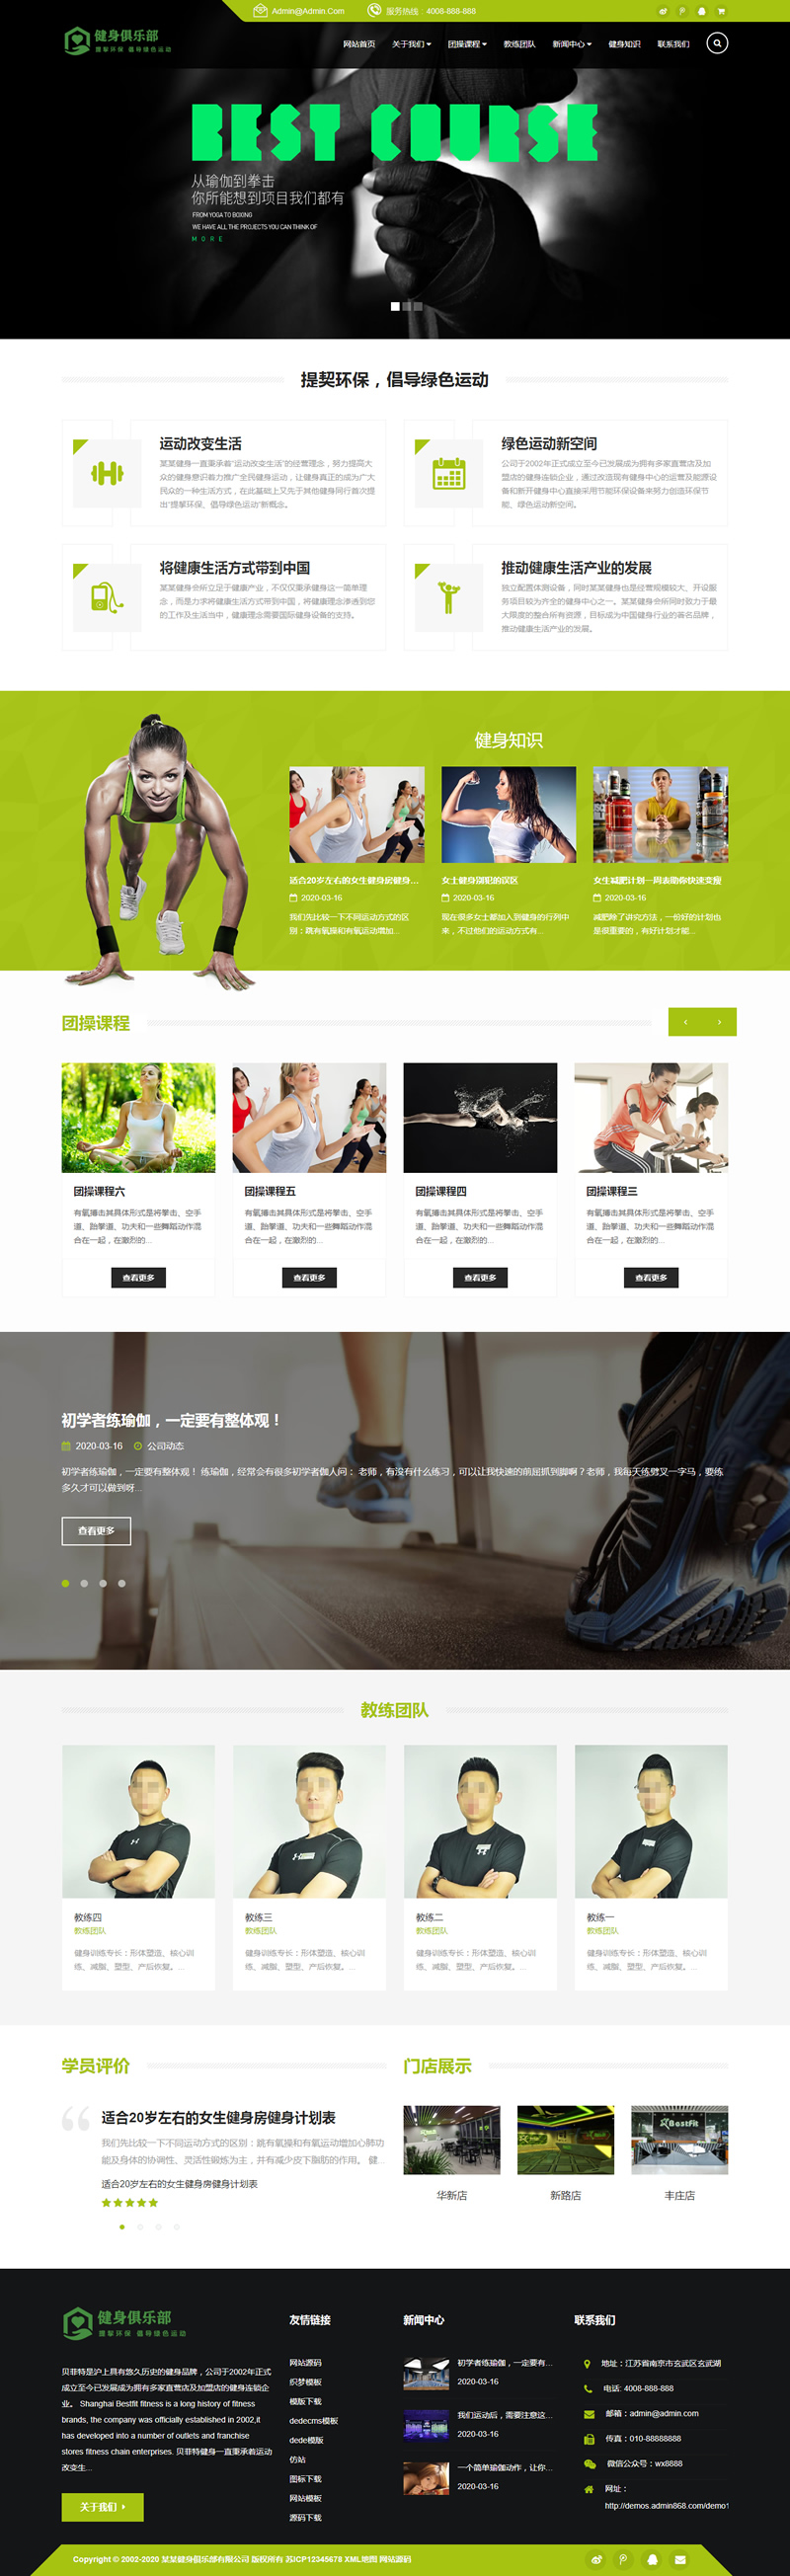 HTML5健身娱乐会所网站织梦模板/自适应手机版/响应式健身俱乐部类网站源码